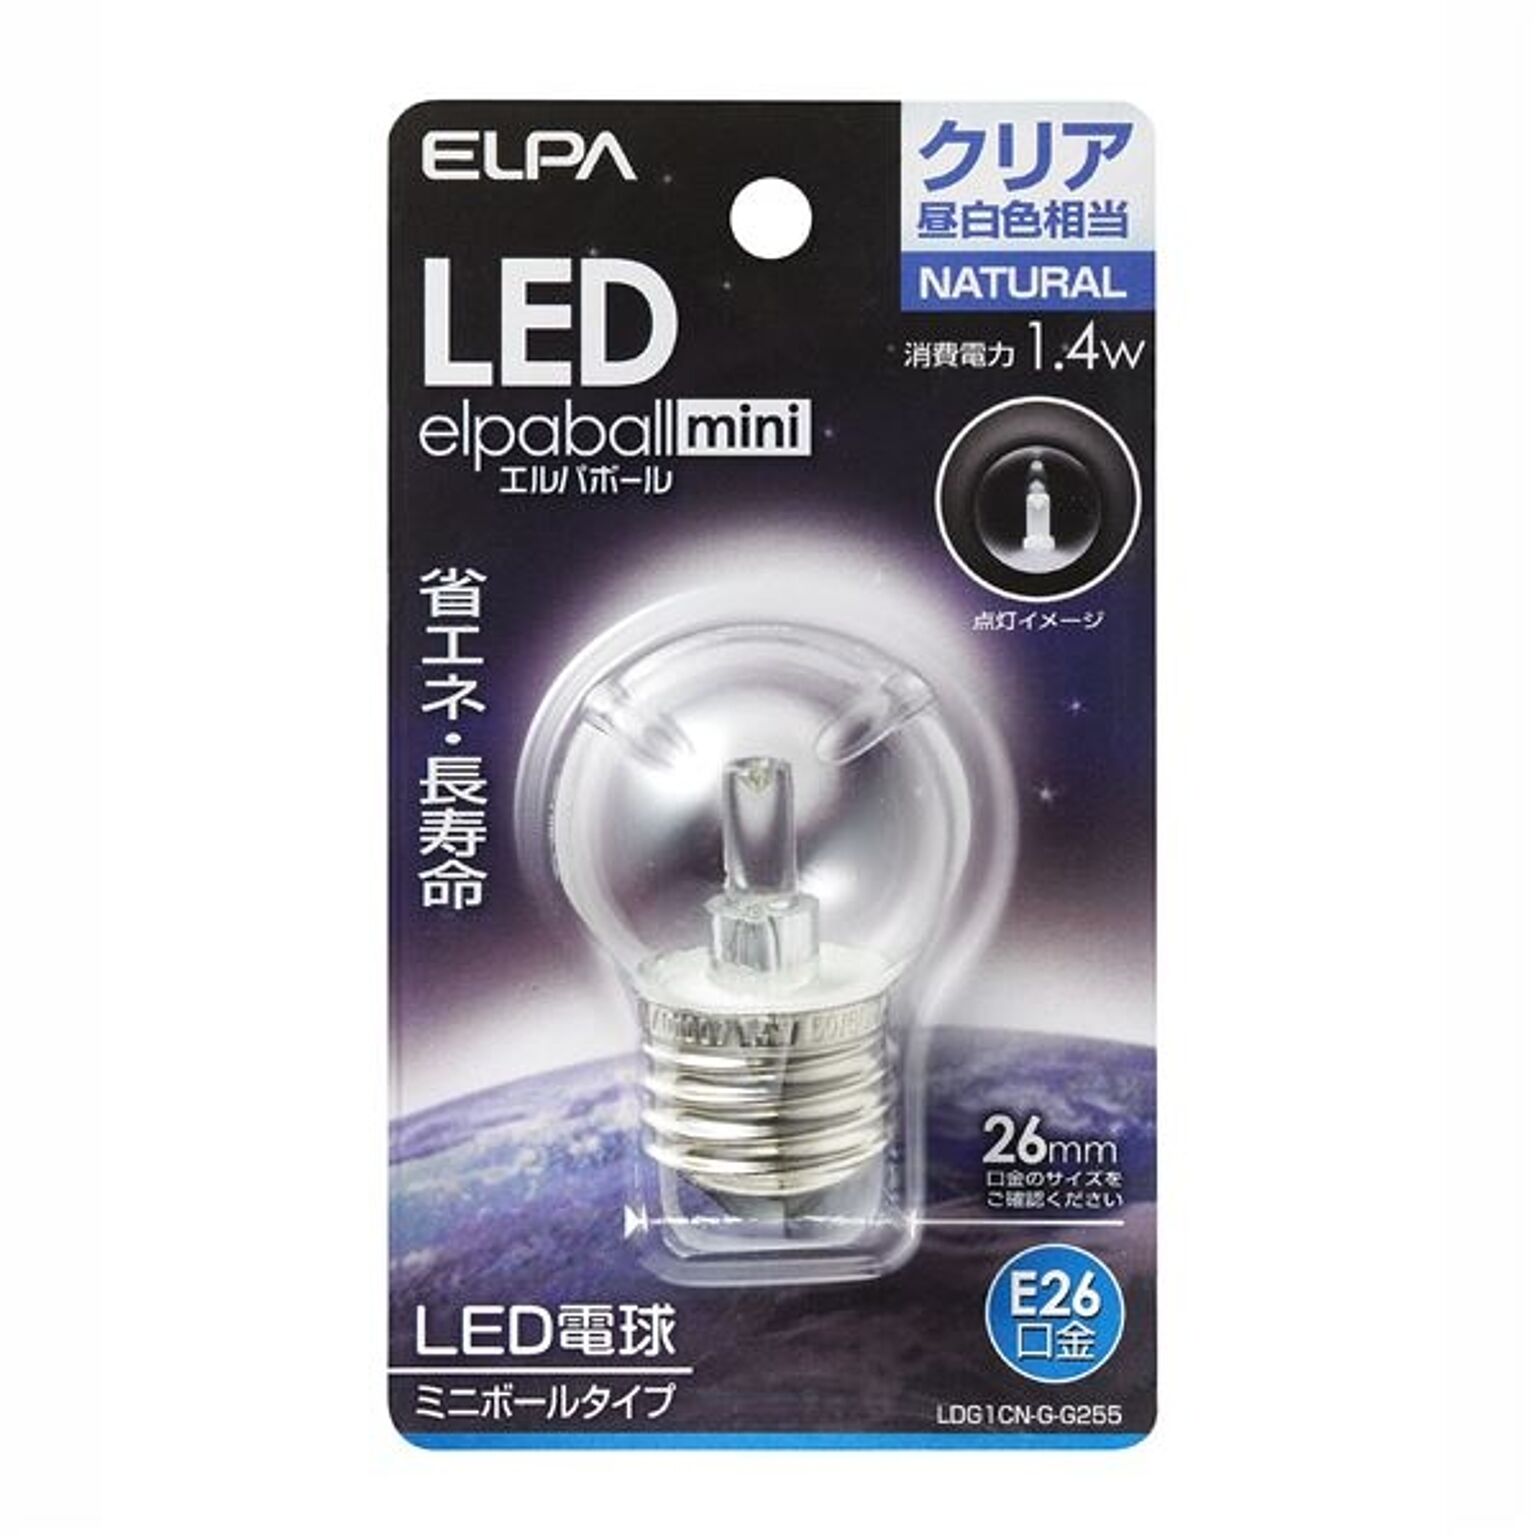 （まとめ） ELPA LED装飾電球 ミニボール球形 E26 G40 クリア昼白色 LDG1CN-G-G255 【×5セット】